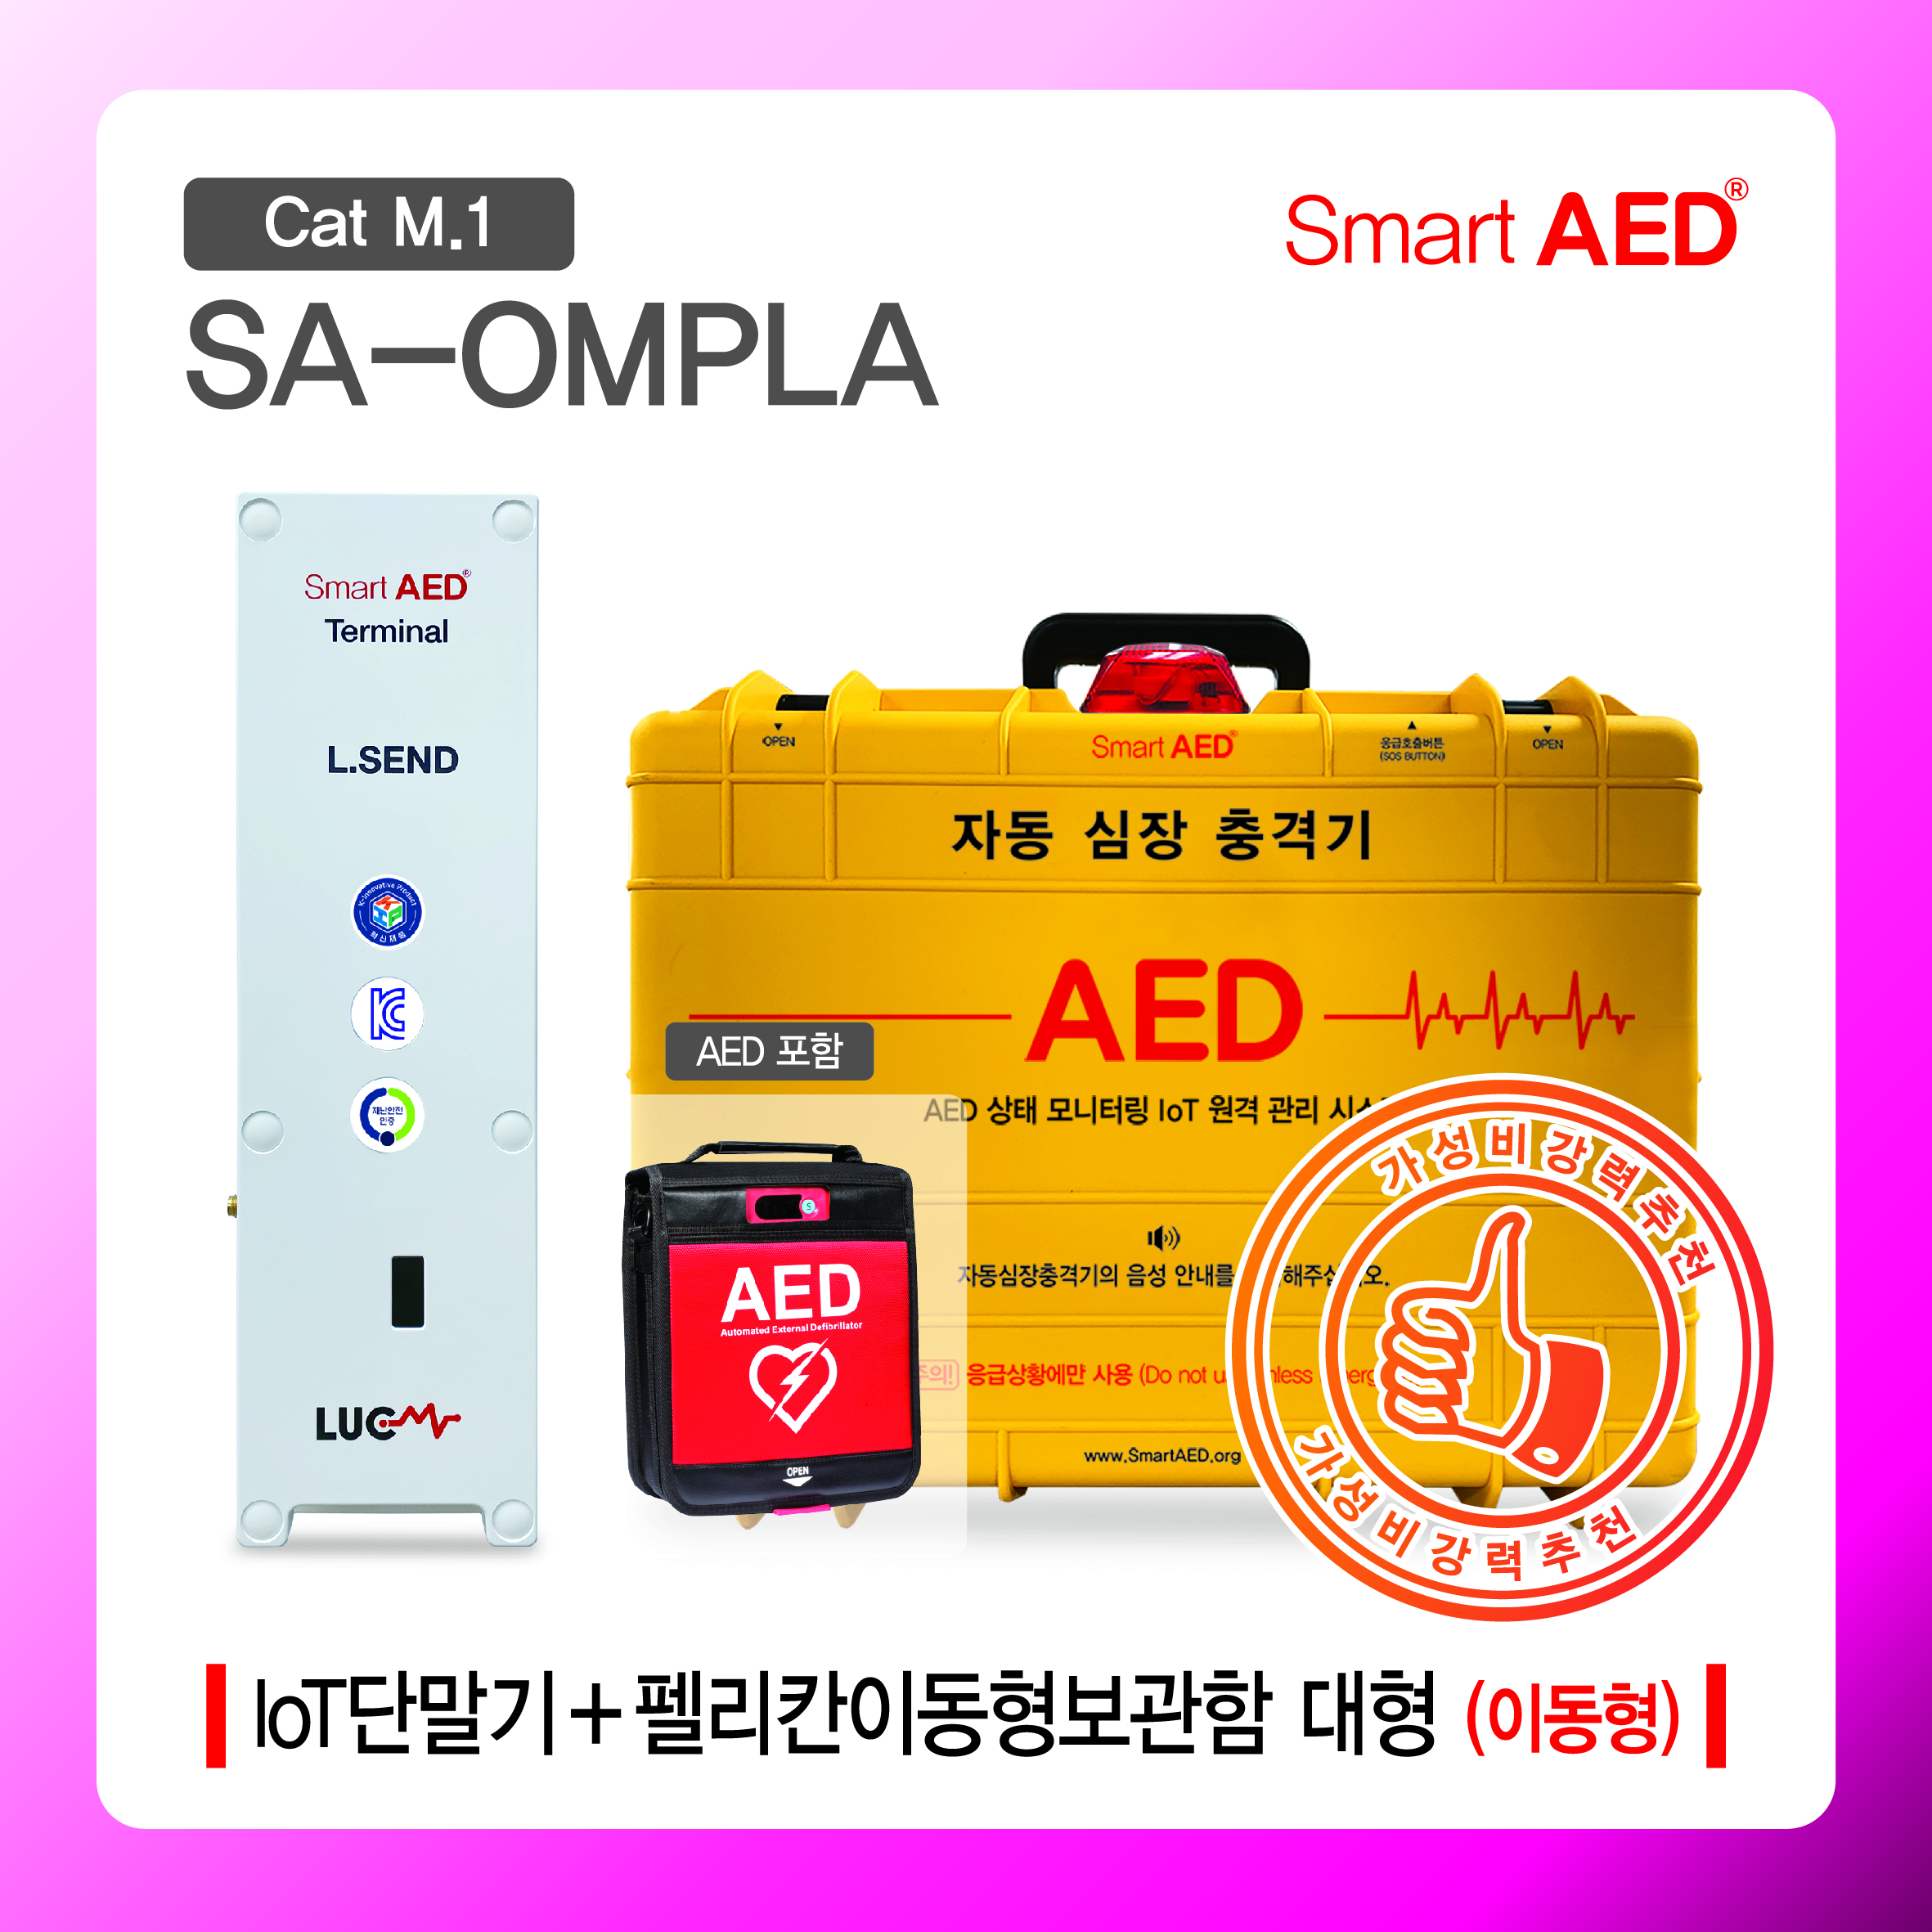 [ SA-OMPLA ] 스마트 AED 통합모니터링 장치 및 이동형보관함(AED포함)